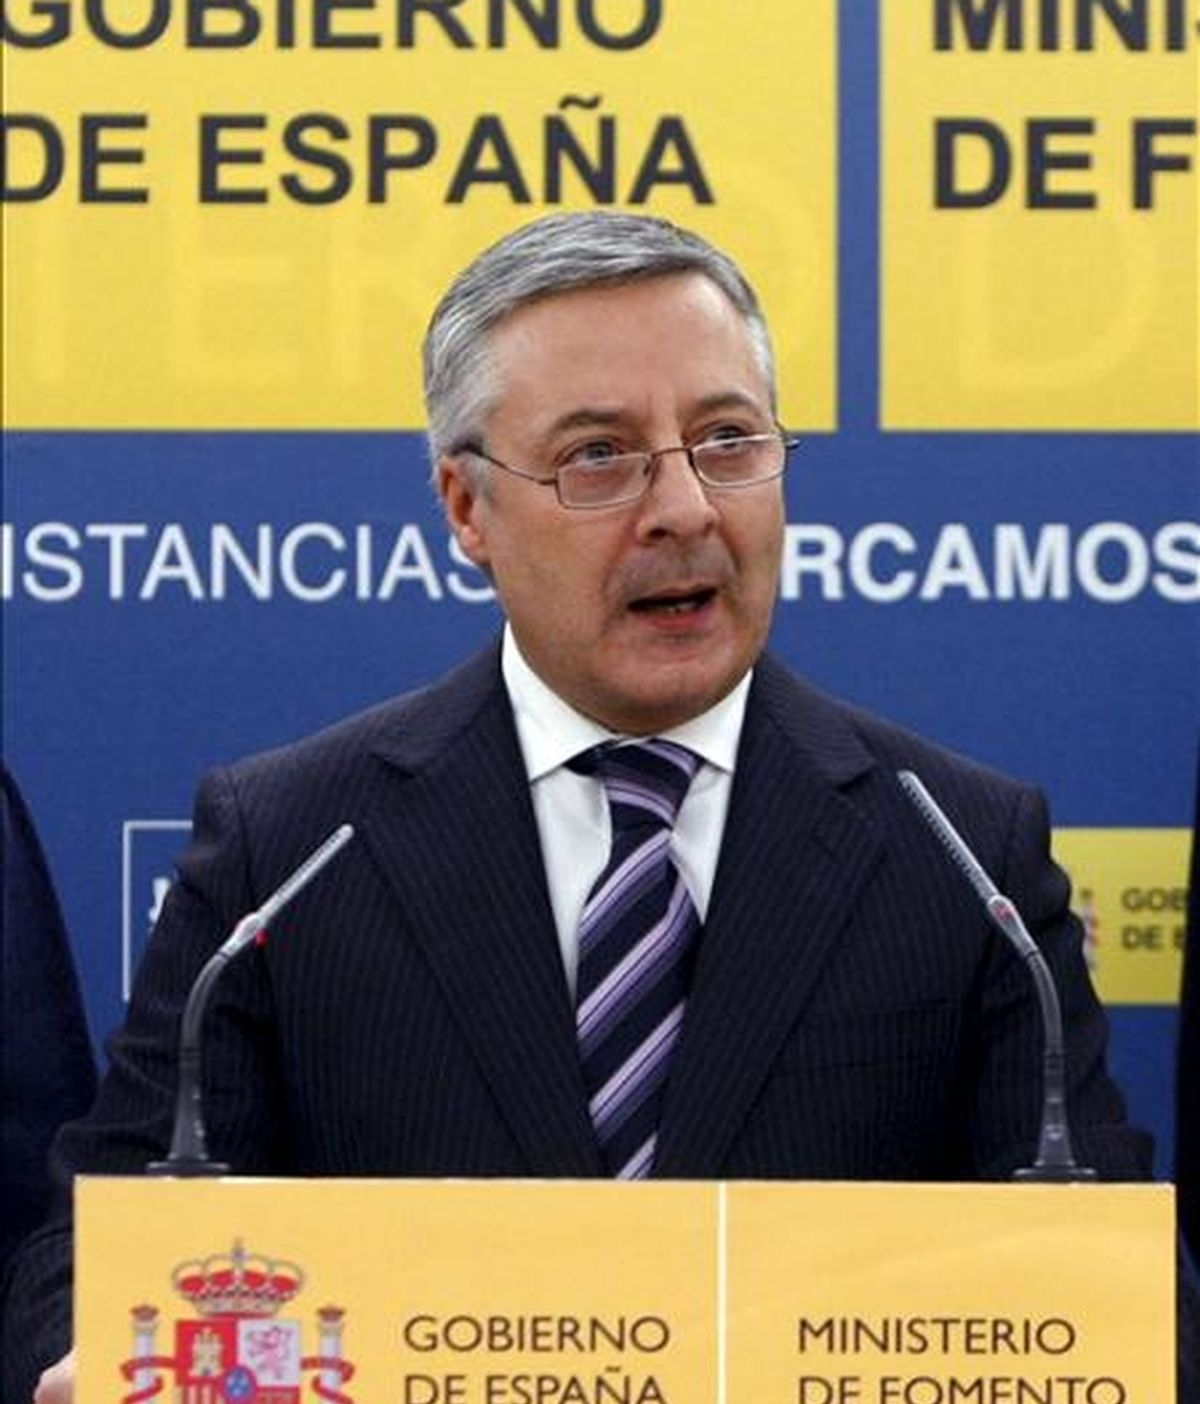 El ministro de Fomento, José Blanco, ha suspendido el viaje que tenía previsto iniciar este domingo a China, como consecuencia de la situación generada por los controladores aéreos en España. EFE